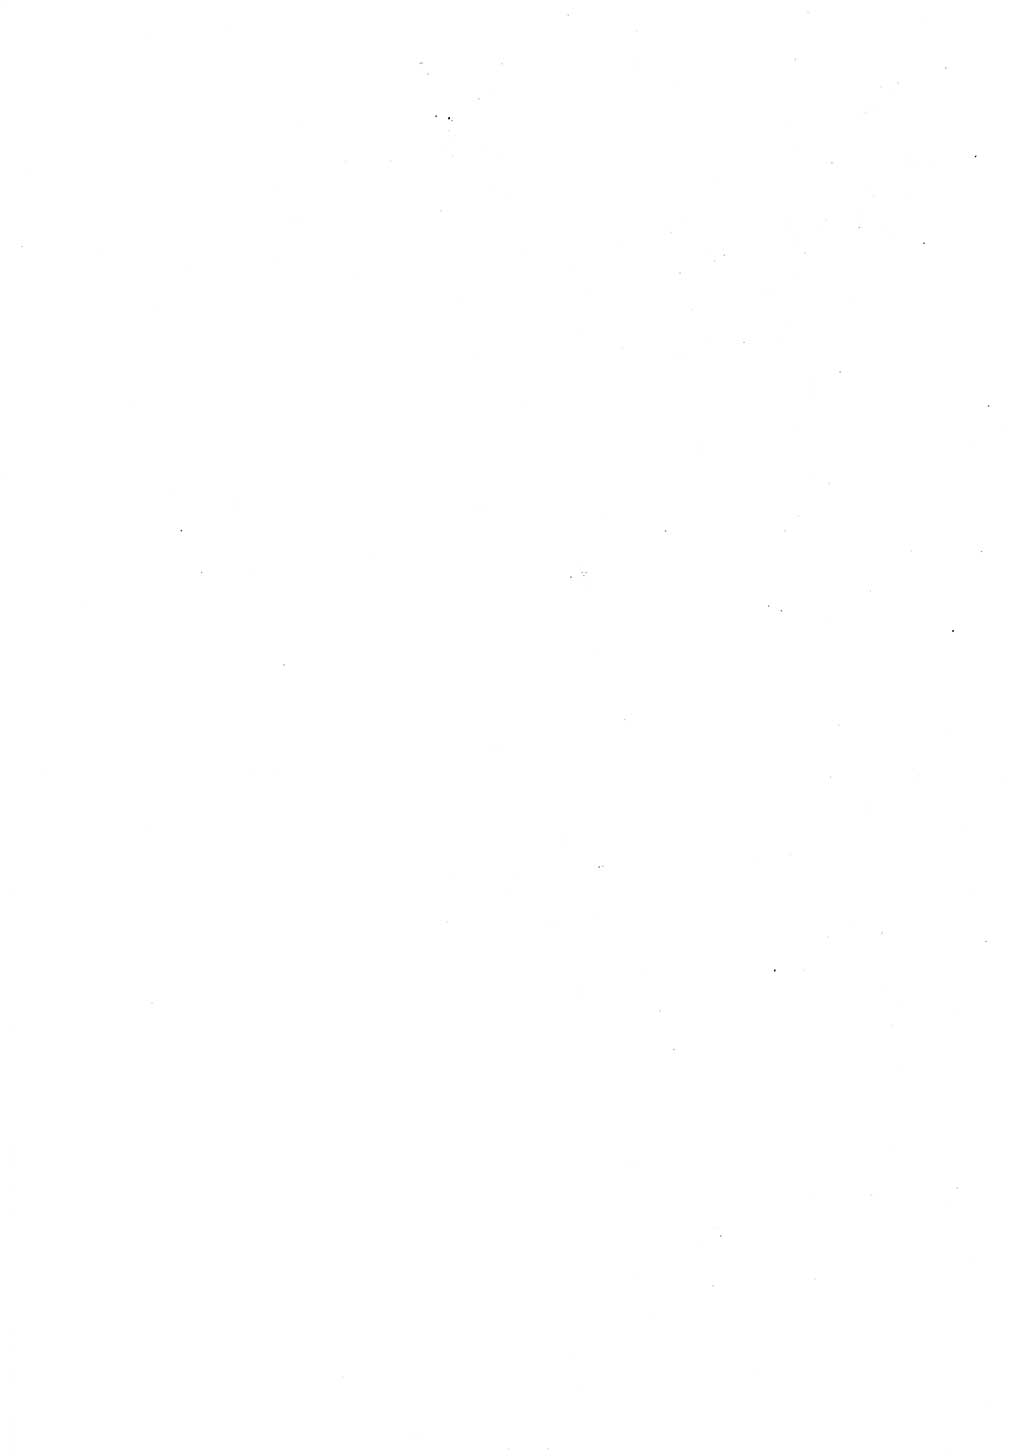 Der erste Tschekist, A. W. Tischkow [Militärverlag des Ministeriums für Verteidigung der UdSSR, Moskau 1968], Ministerium für Staatssicherheit (MfS) [Deutsche Demokratische Republik (DDR)], Juristische Hochschule (JHS) Potsdam 1969, Seite 4 (Tschekist MfS JHS DDR 1969, S. 4)